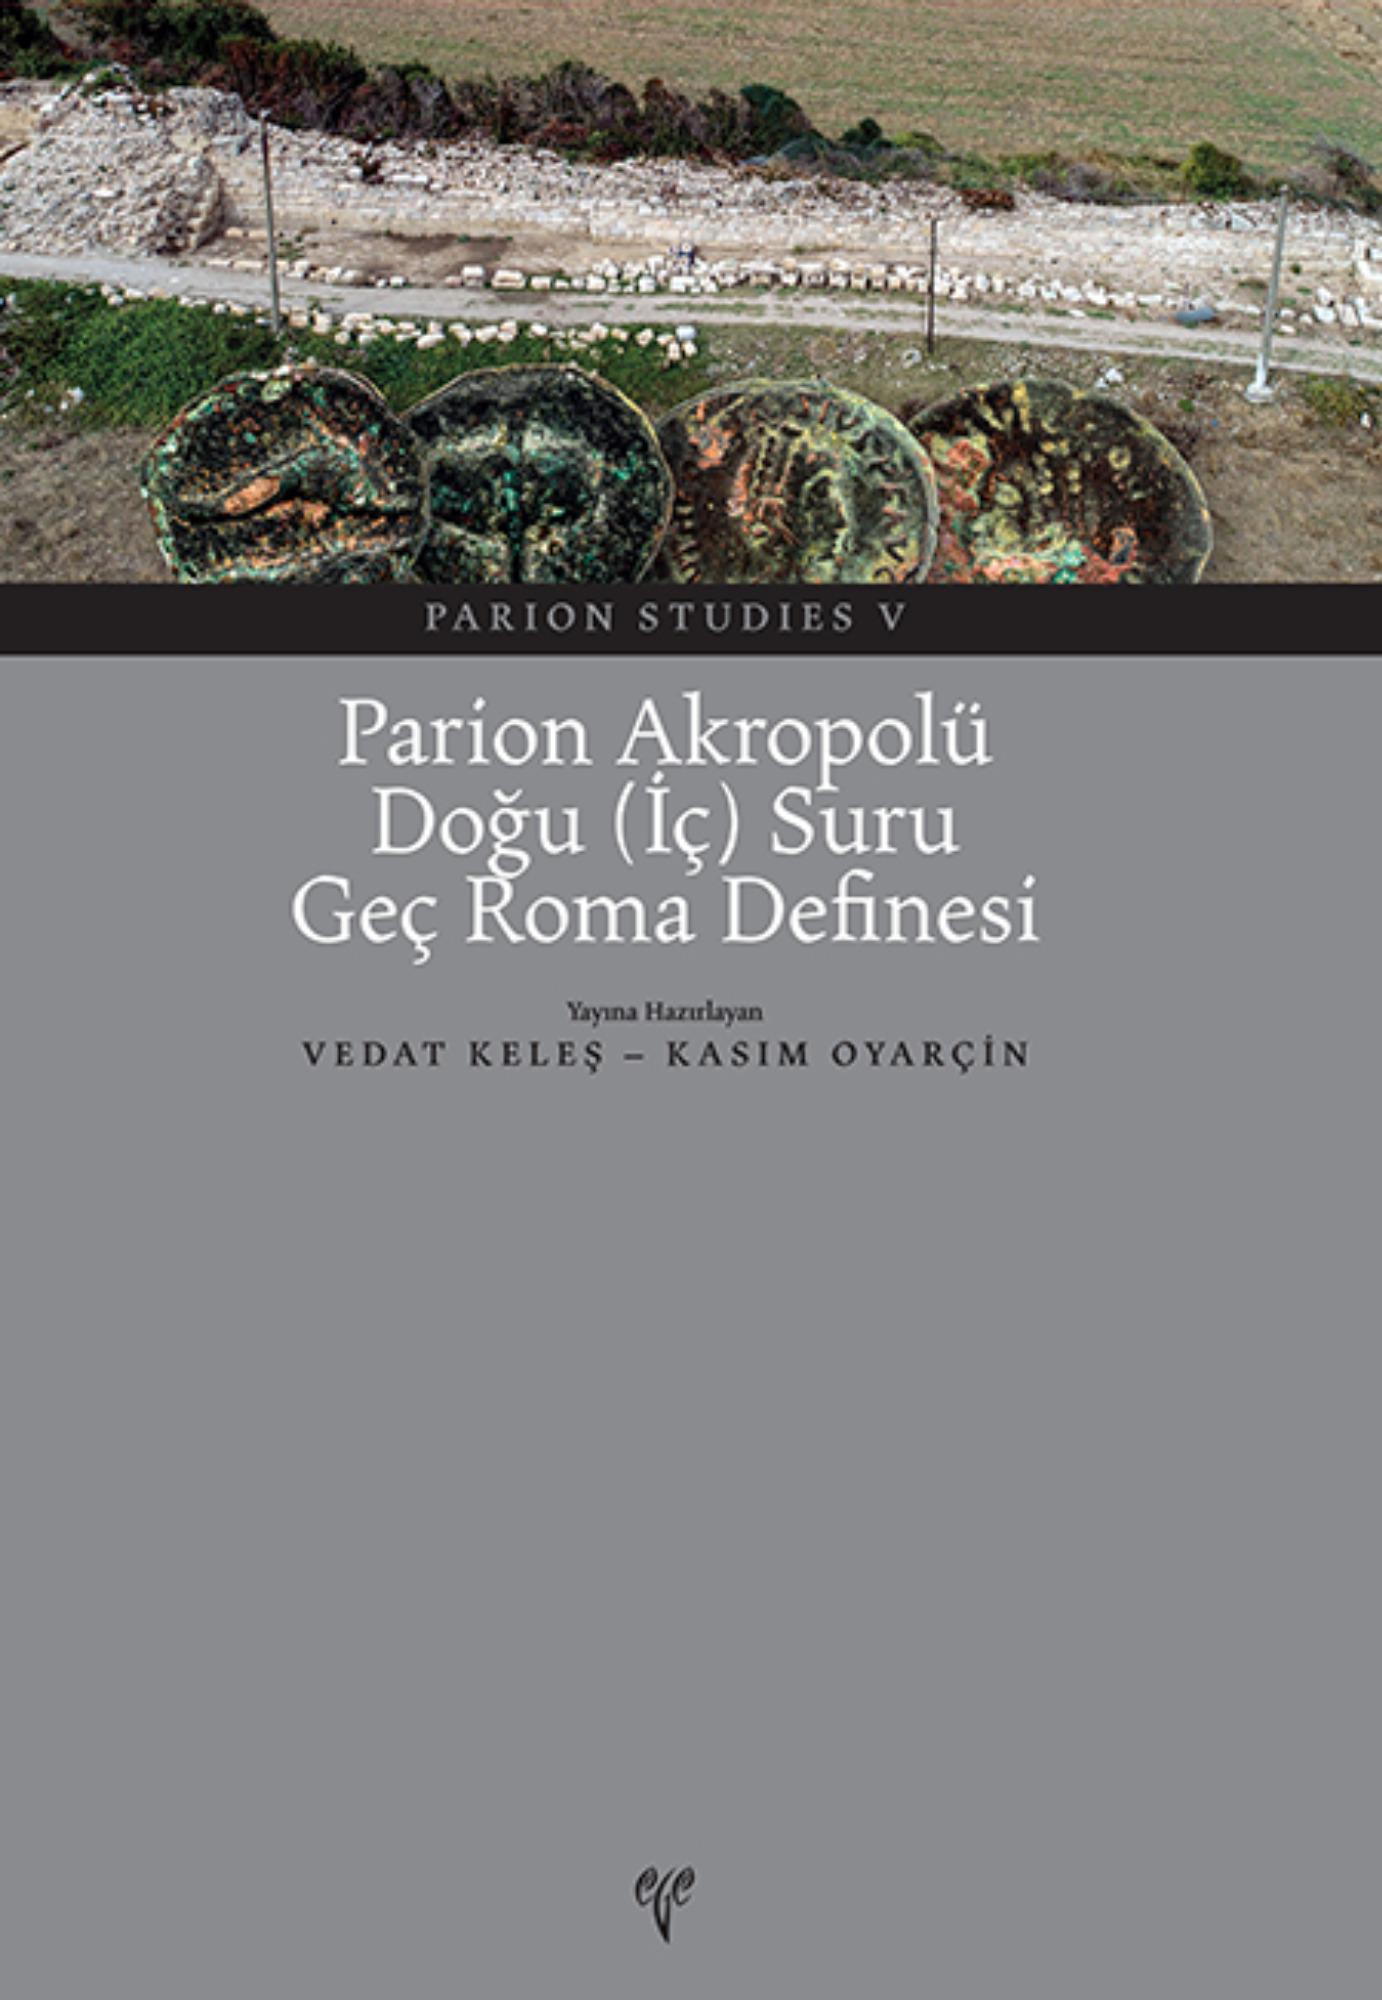 Keleş, Vedat – Kasım Oyarçin : Parion Akropolü Doğu (İç) Suru Geç Roma Definesi